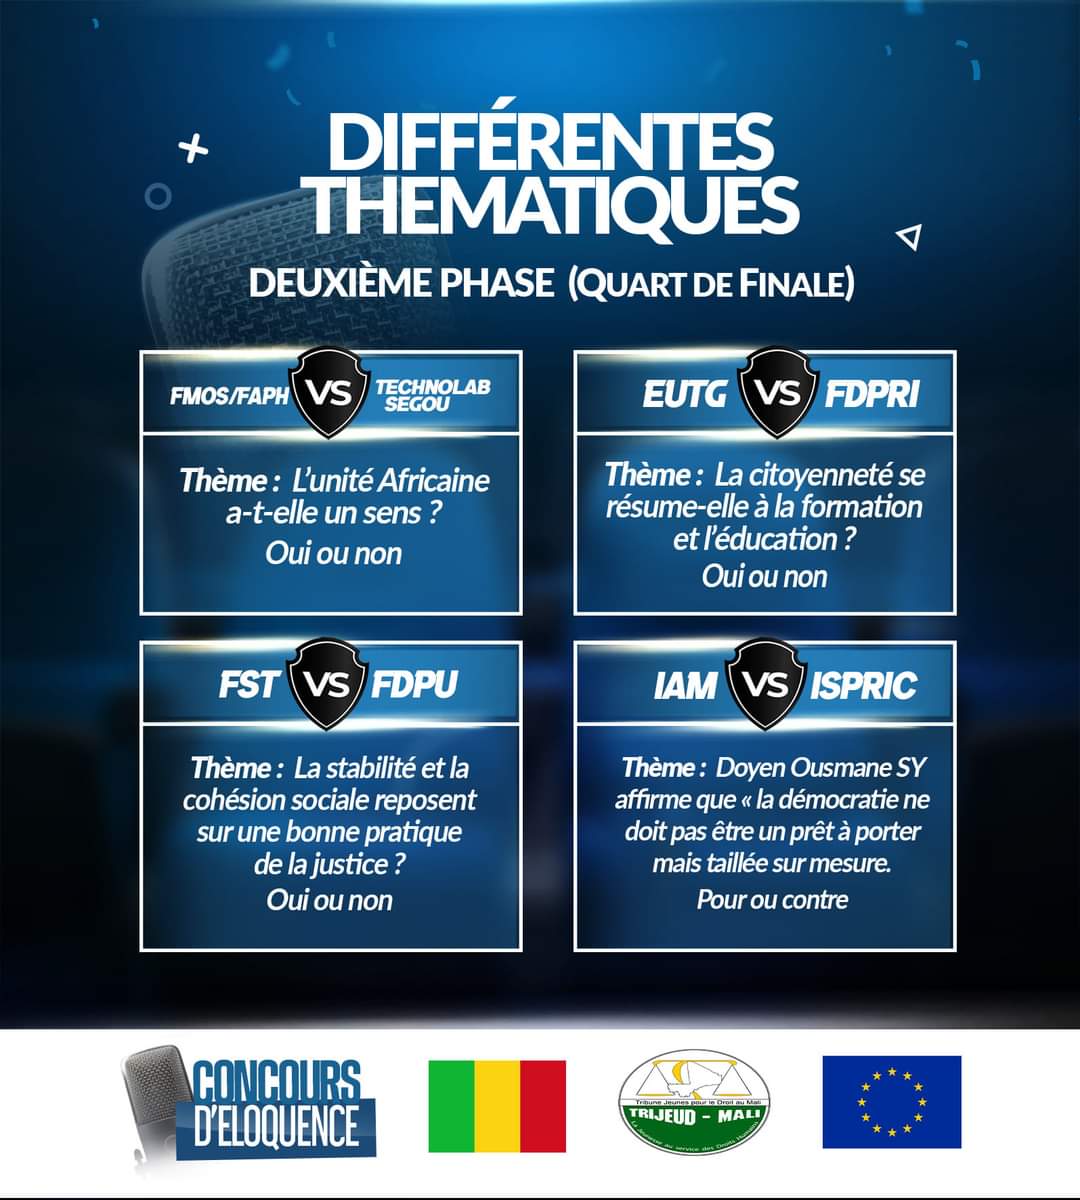 𝐂𝐨𝐧𝐜𝐨𝐮𝐫𝐬 𝐝'𝐞́𝐥𝐨𝐪𝐮𝐞𝐧𝐜𝐞 𝟐𝐞 𝐞́𝐝𝐢𝐭𝐢𝐨𝐧 Rendez-vous ce 𝐦𝐞𝐫𝐜𝐫𝐞𝐝𝐢 𝟎𝟏 𝐦𝐚𝐢 au 𝐆𝐨𝐮𝐯𝐞𝐫𝐧𝐨𝐫𝐚𝐭 du district de Bamako à partir de 𝟎𝟗𝐇𝟎𝟎 pour la deuxième phase de la 2e édition du concours d'éloquence. Entrée libre! @UEauMali @trijeud